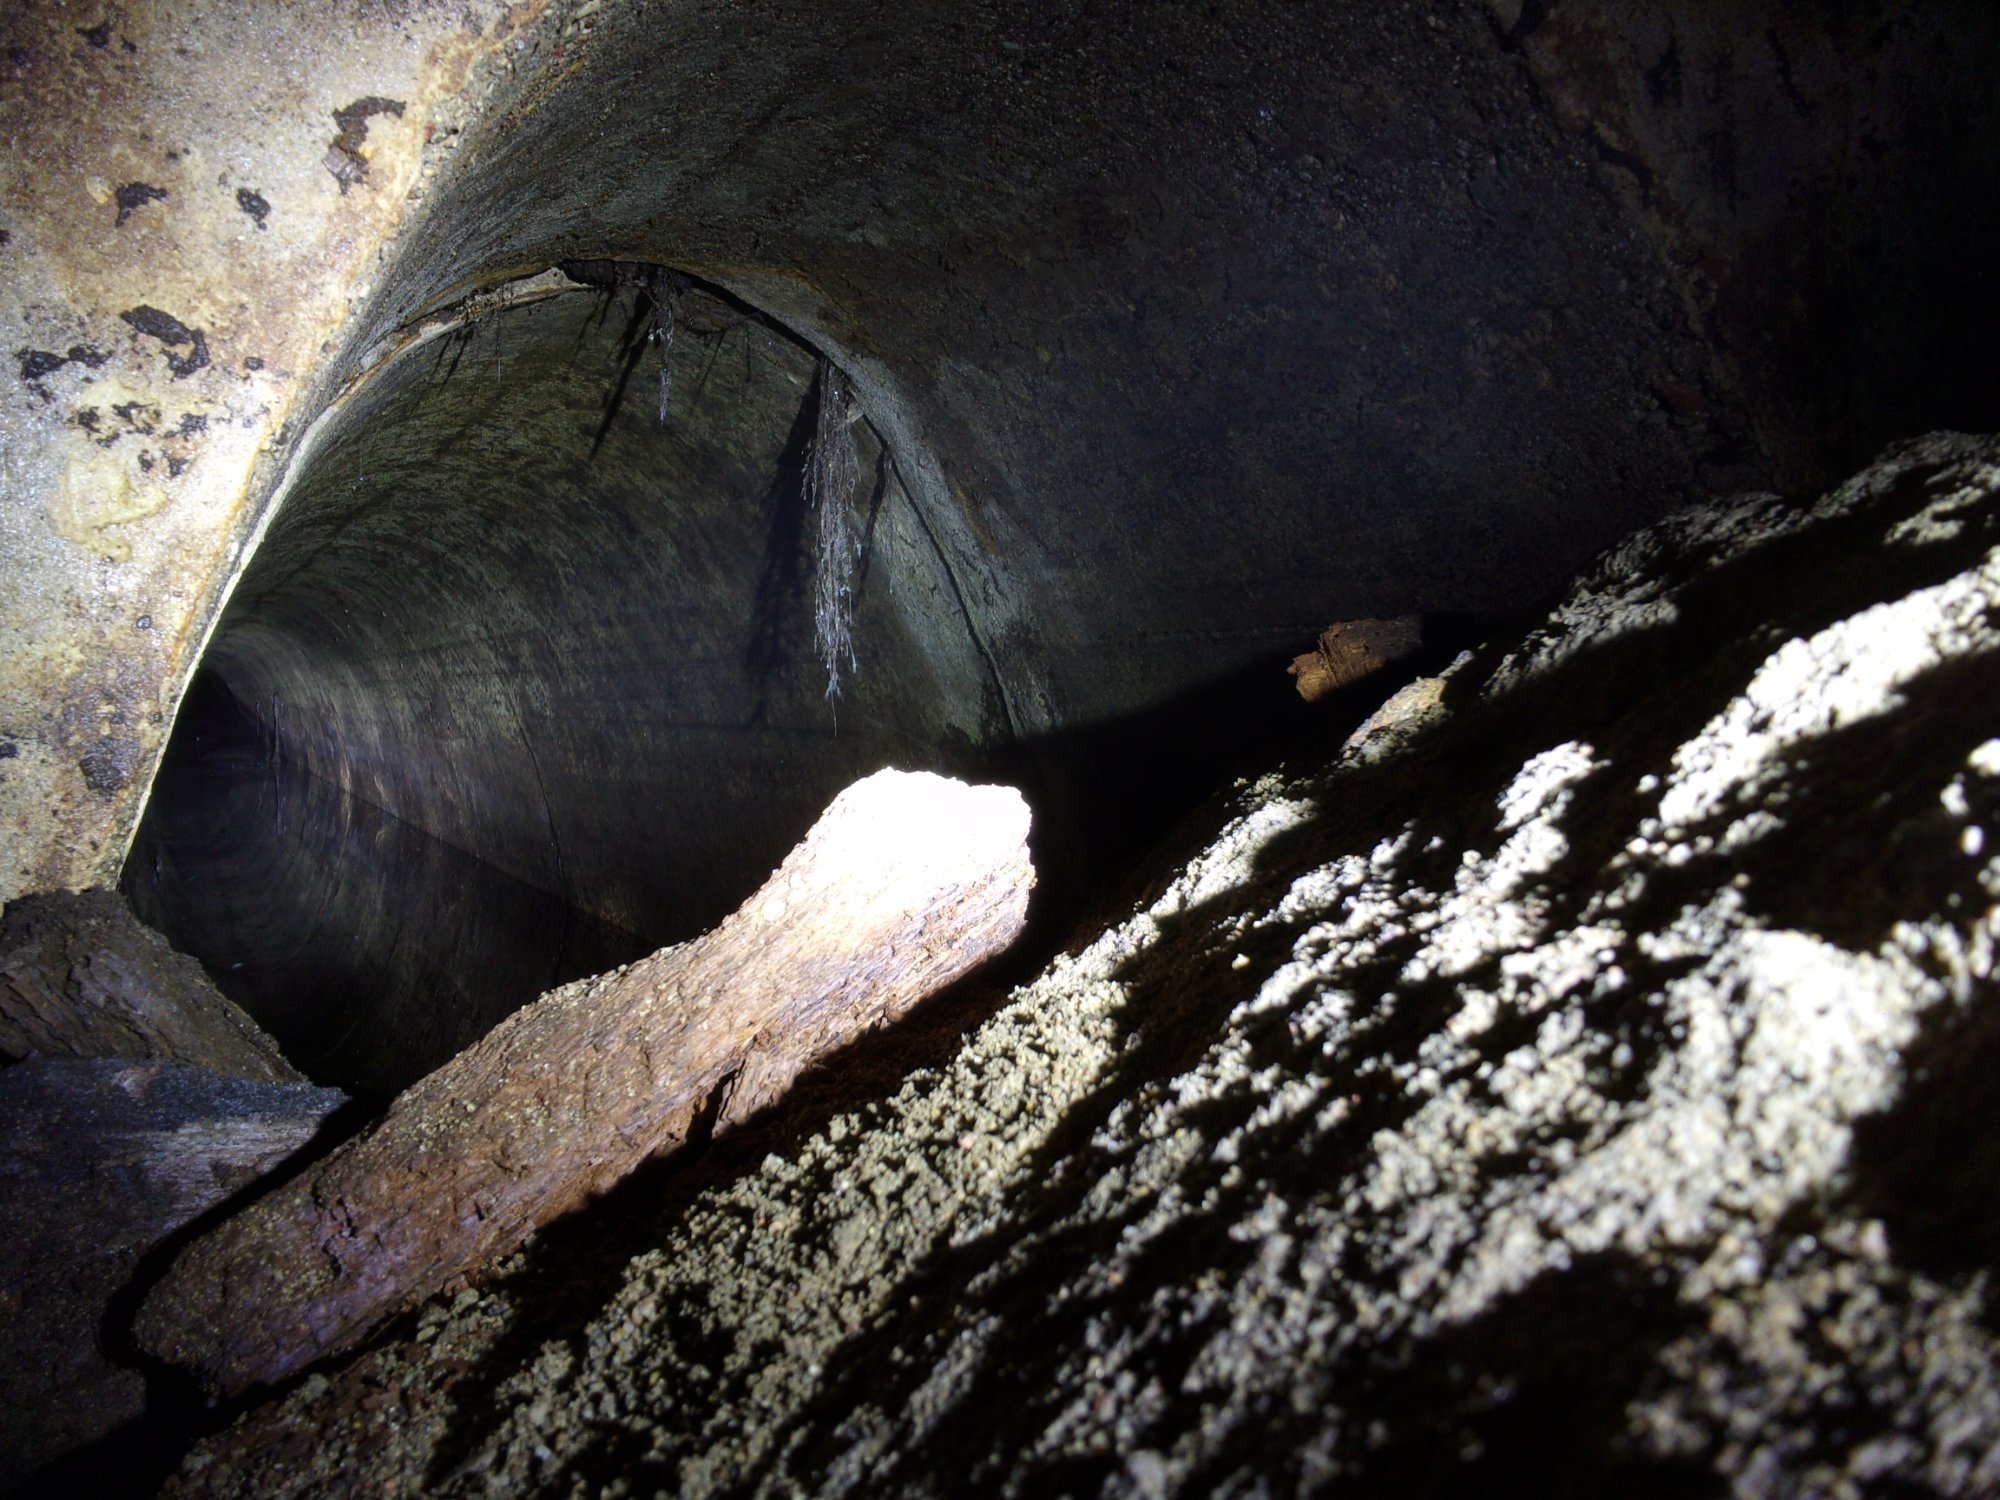 Widok na niedostępną część tunelu. Aparat wsunięty w szpary śluzy.